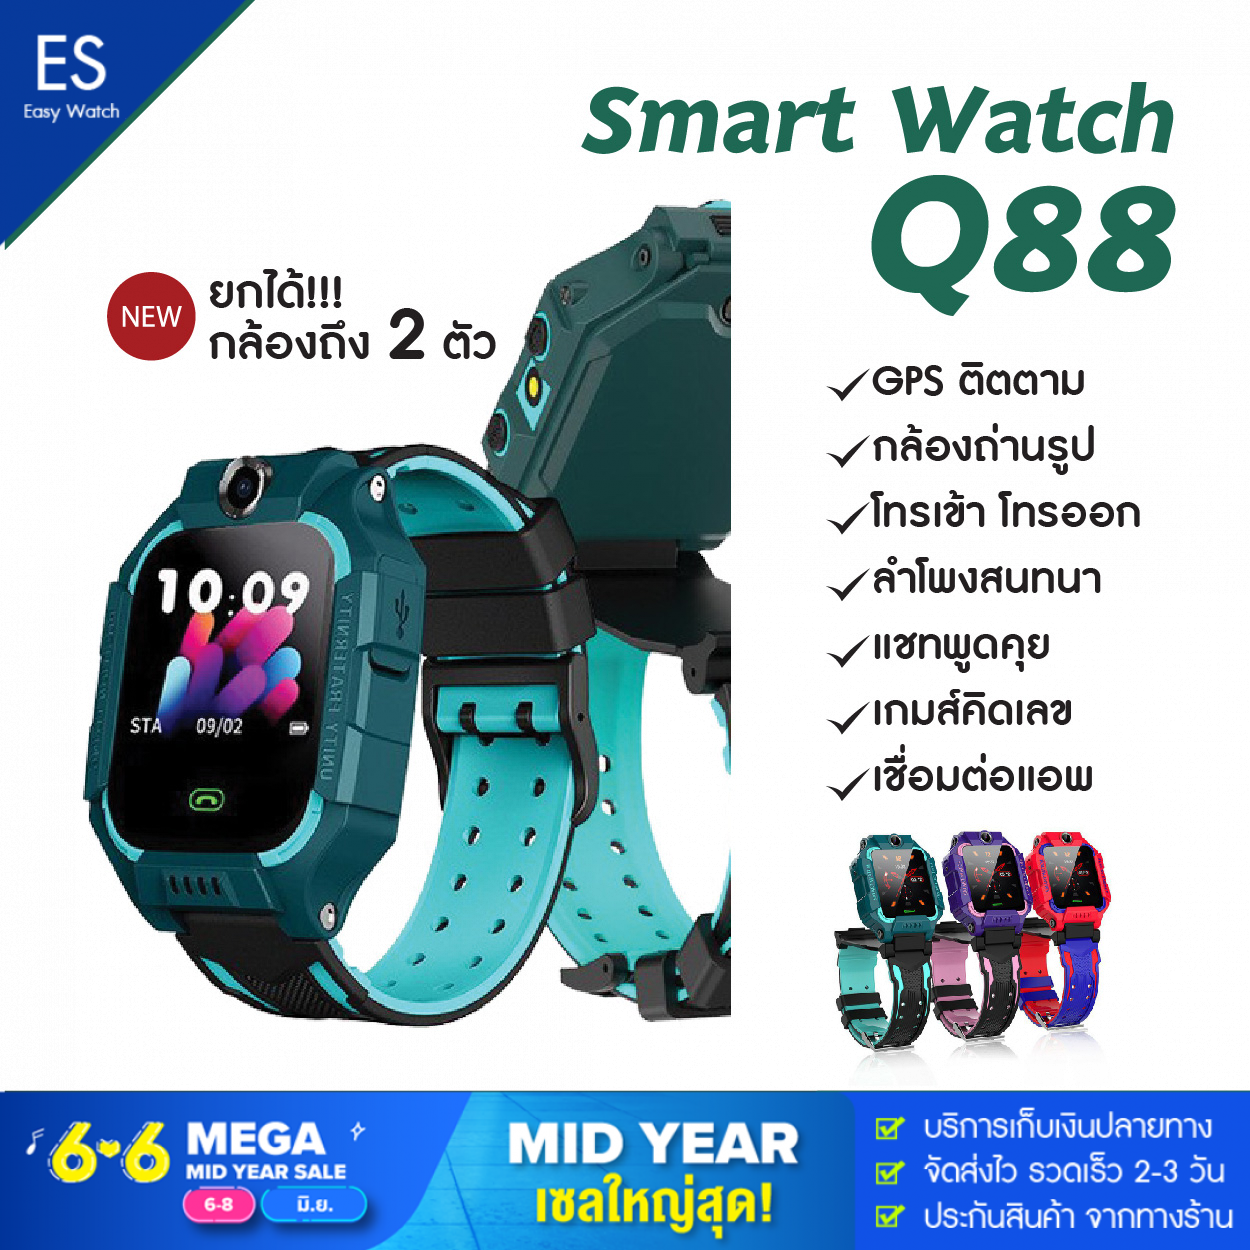 【ส่งไว พร้อมส่งจากไทย】นาฬิกาเด็ก สมาร์ทวอช นาฬิกาโทรศัพท์ Smart Watch Q88 หน้าจอยกได้ เมนูภาษาไทย ถ่ายรูปได้ นาฬิกาข้อมืออัจฉริยะโทรศัพท์สำหรับเด็ก มี GPS ติดตามตำแหน่ง Anti Lost Monitor ใส่ซิมได้ โทรเข้า-ออกได้ Smart Kids